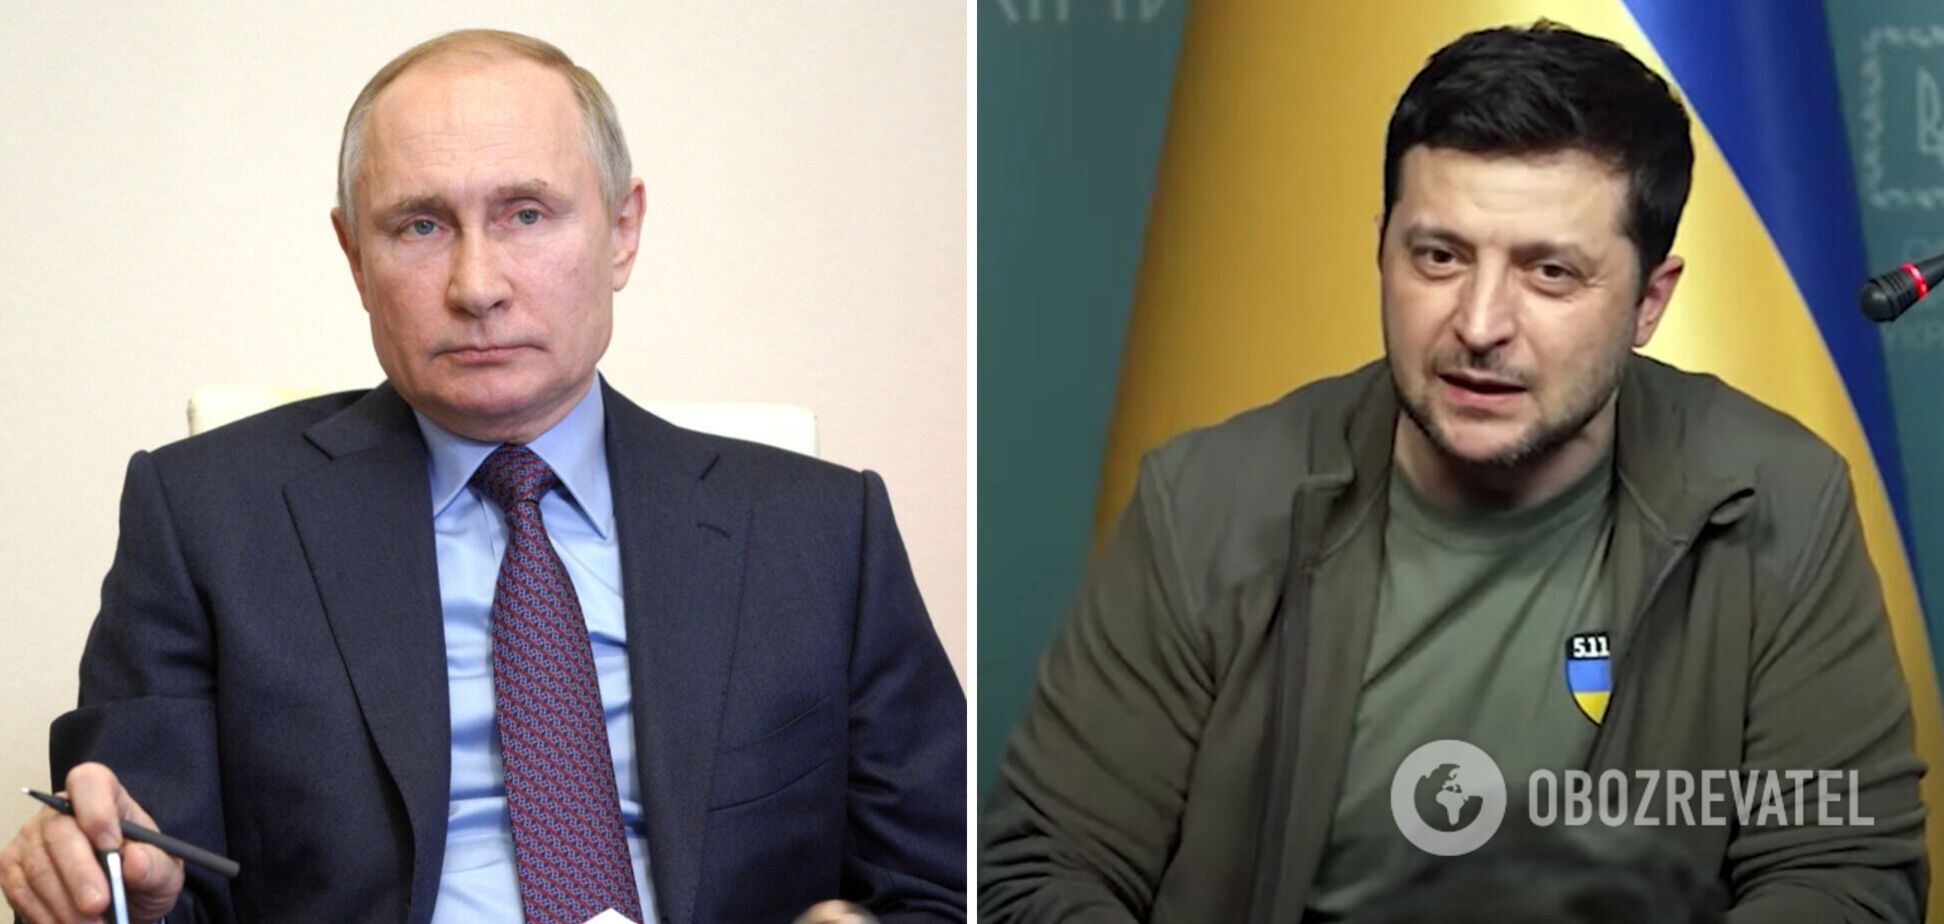 Зеленский высказался о встречи с Путиным